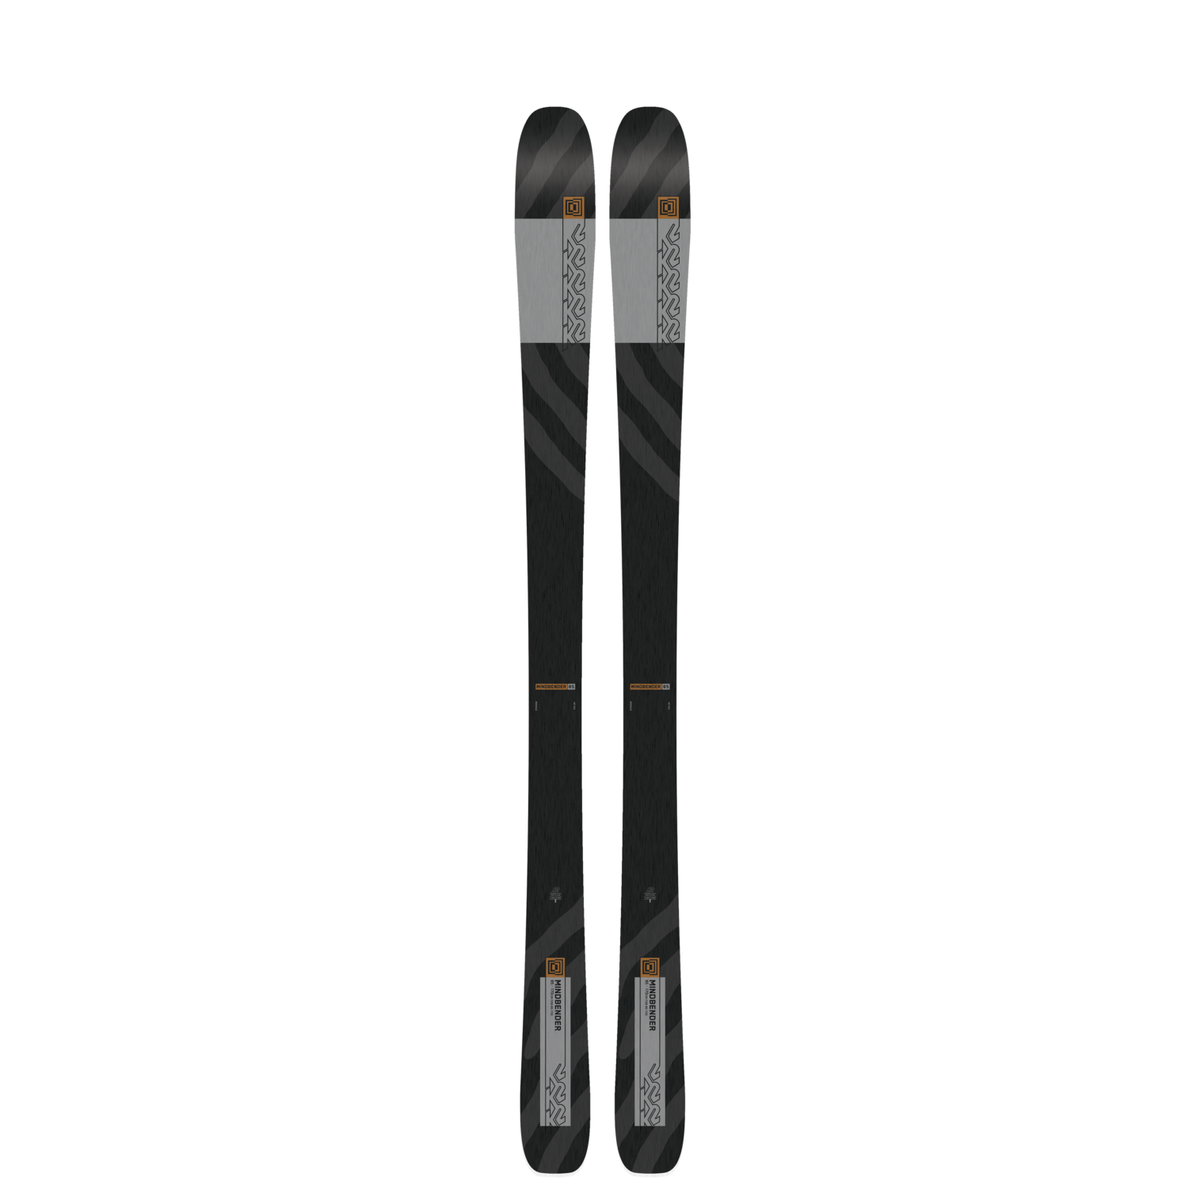 K2 Mindbender 85 Skis